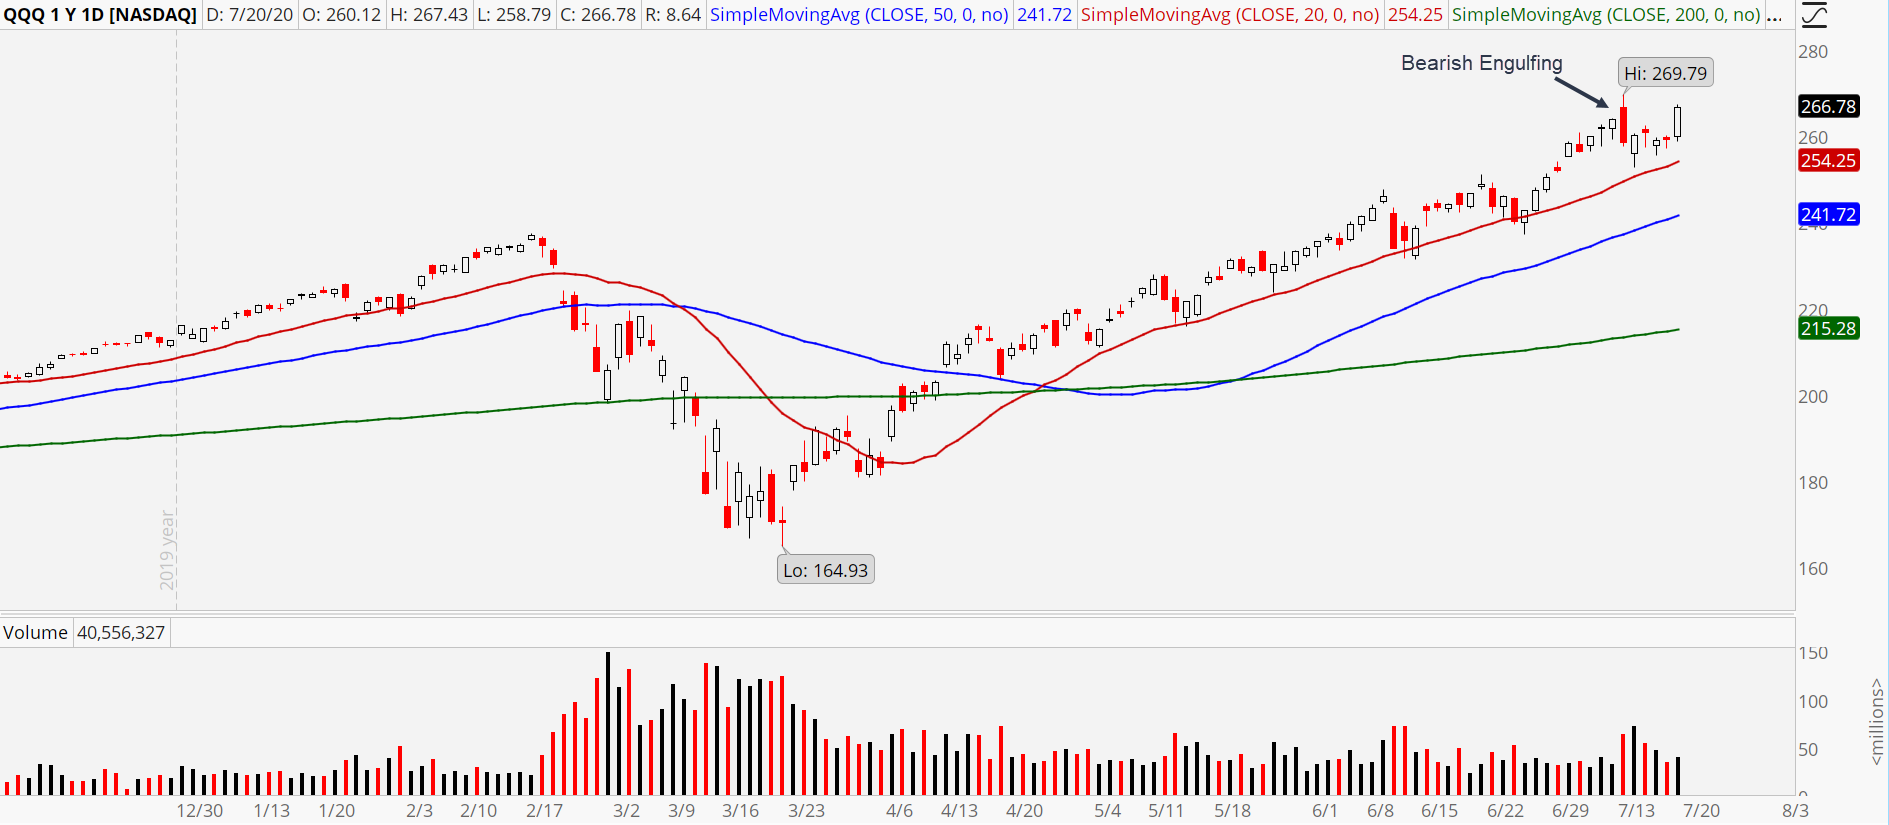 Nasdaq-100 ETF (QQQ) stock chart showing strong Monday rally